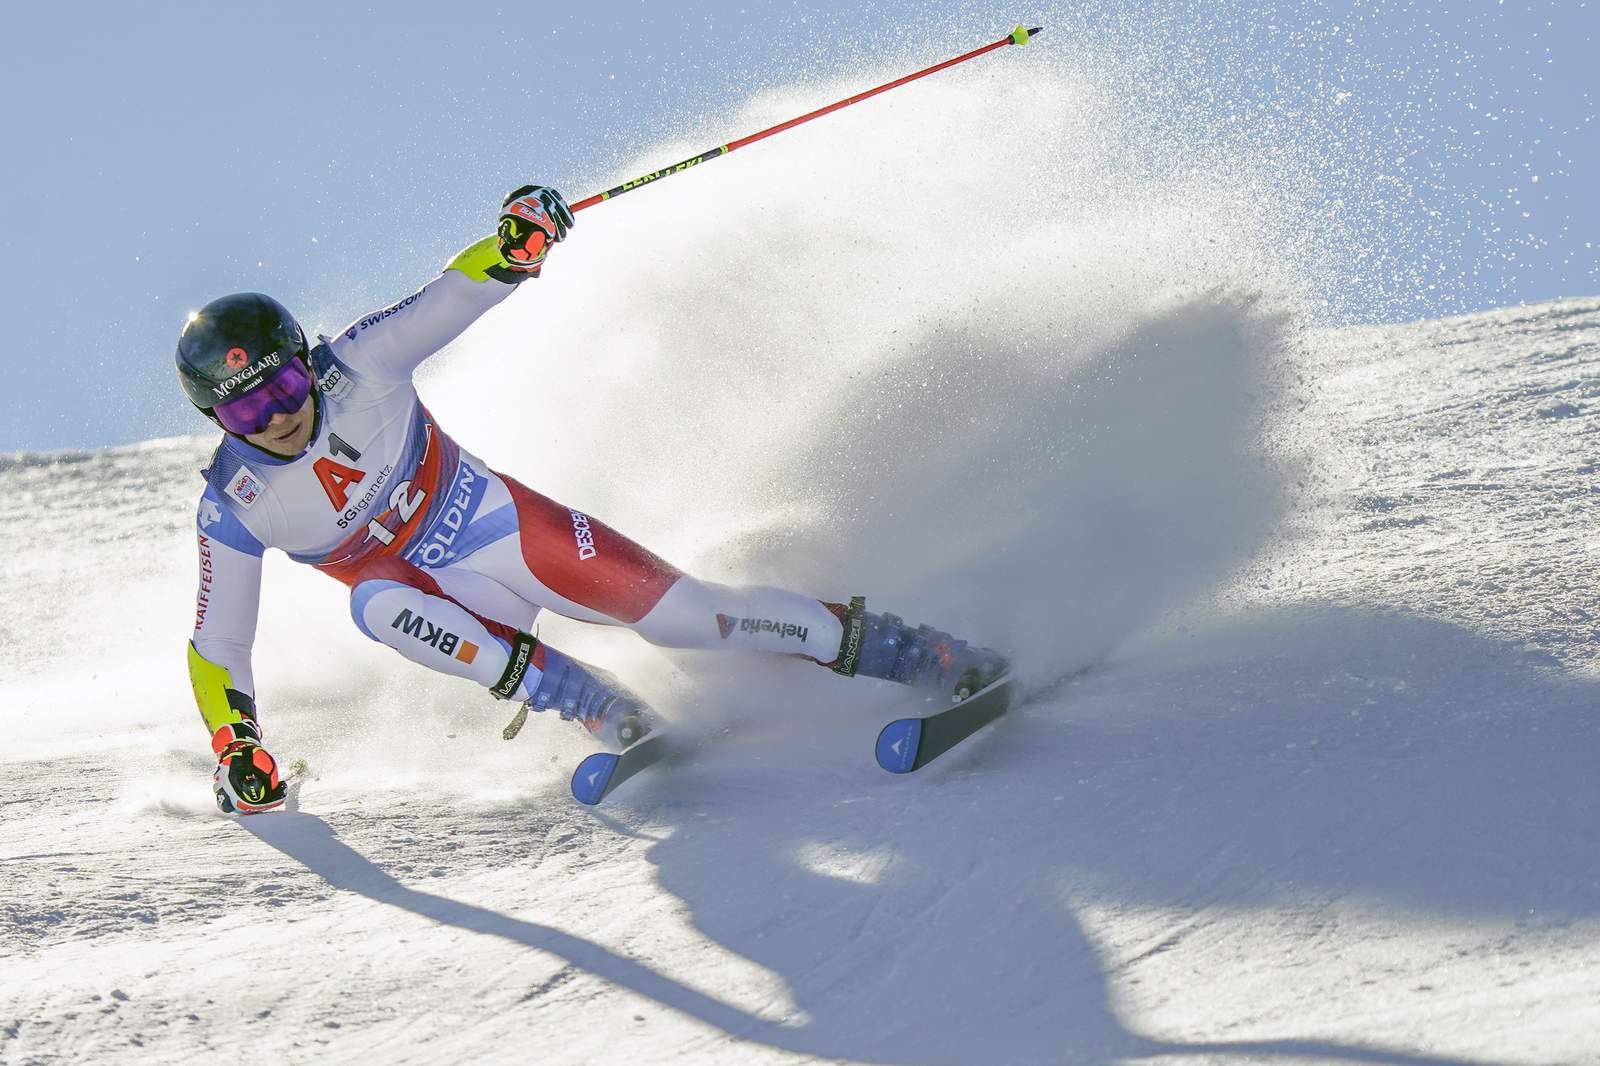 Swiss skier Caviezel has slim 1st-run lead in season opener